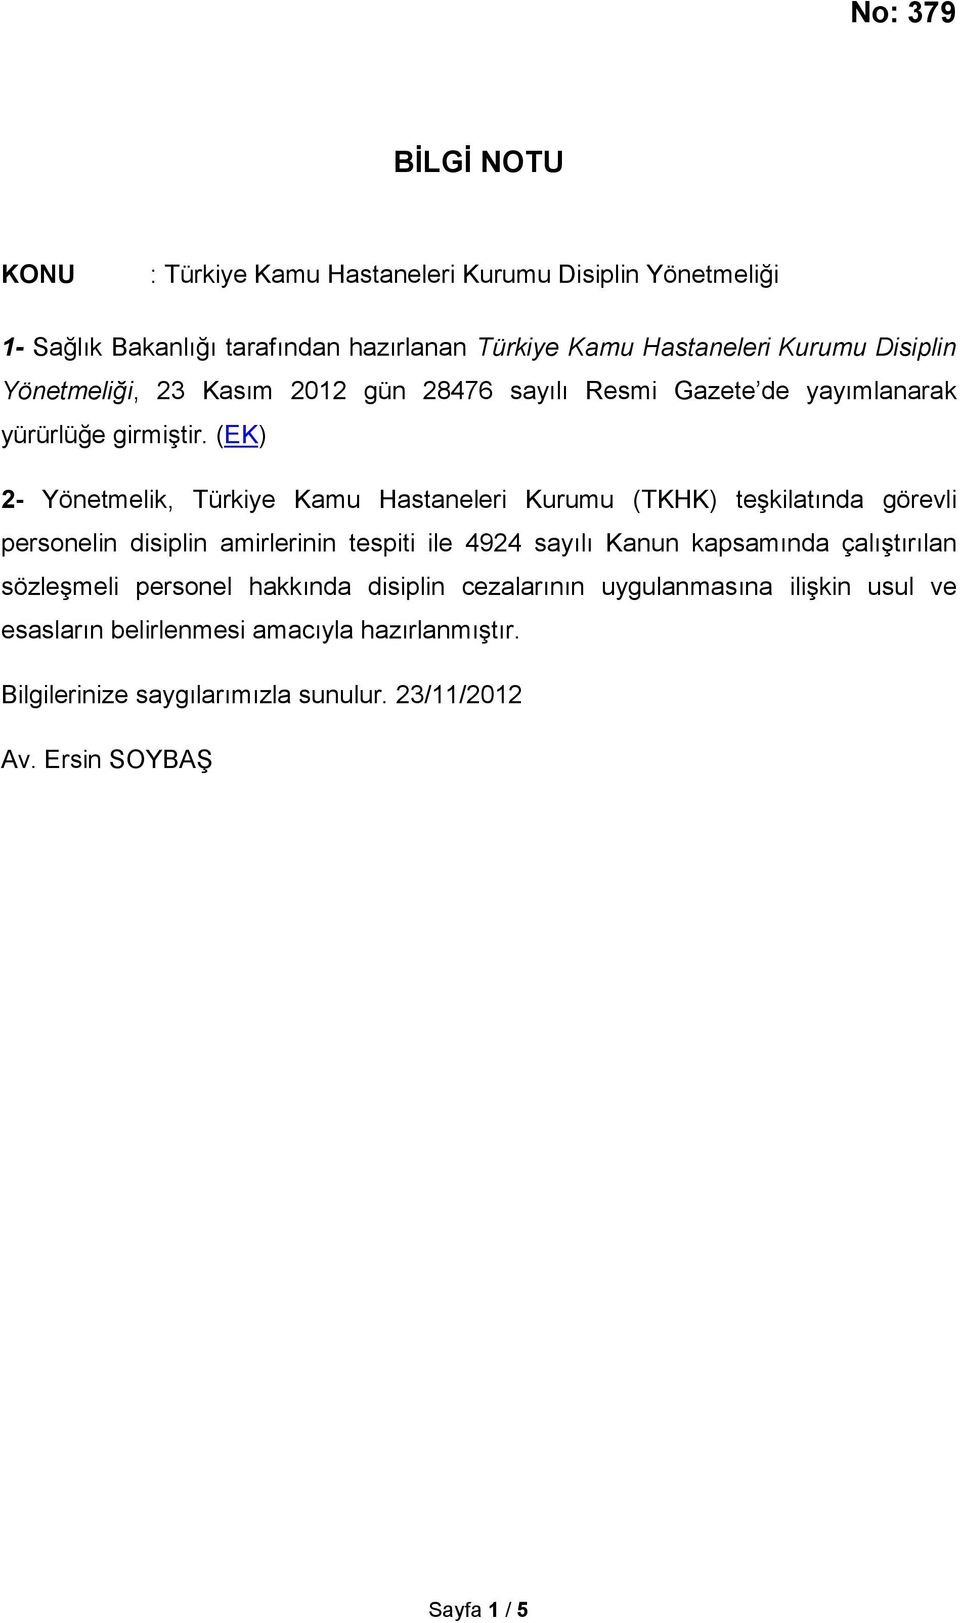 (EK) 2- Yönetmelik, Türkiye Kamu Hastaneleri Kurumu (TKHK) teşkilatında görevli personelin disiplin amirlerinin tespiti ile 4924 sayılı Kanun kapsamında